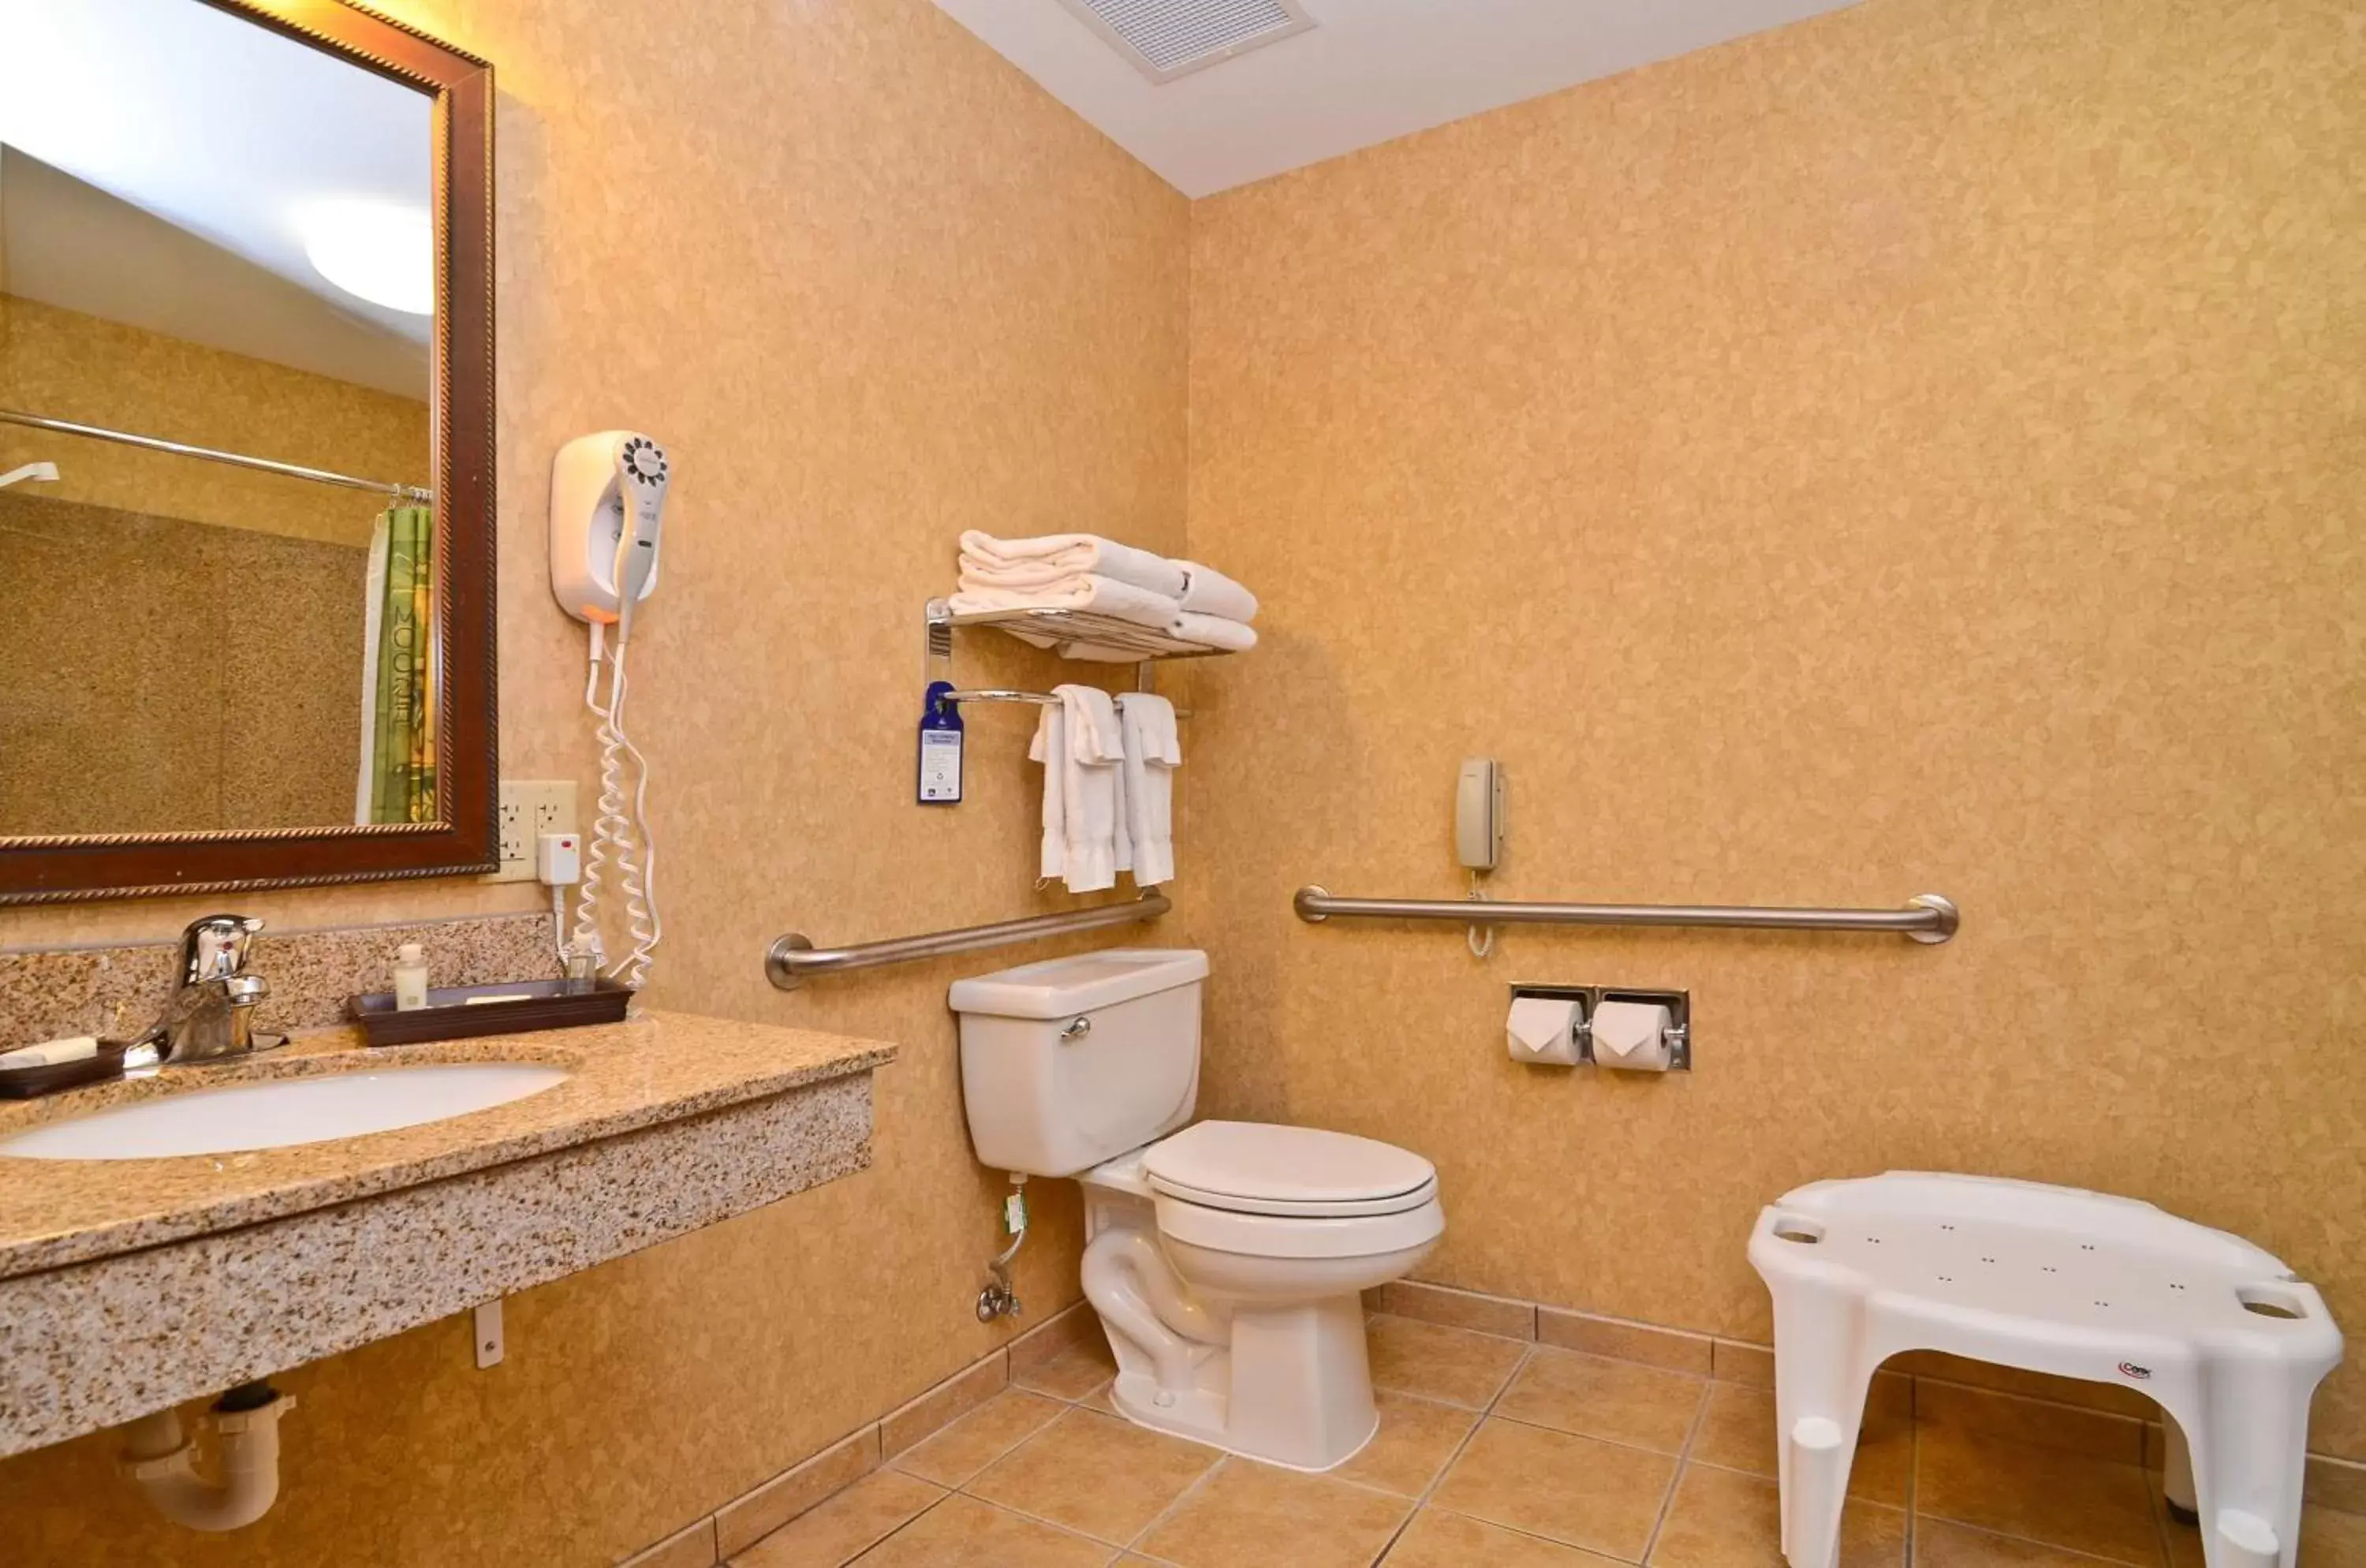 Bathroom in Best Western Plus Kelly Inn and Suites